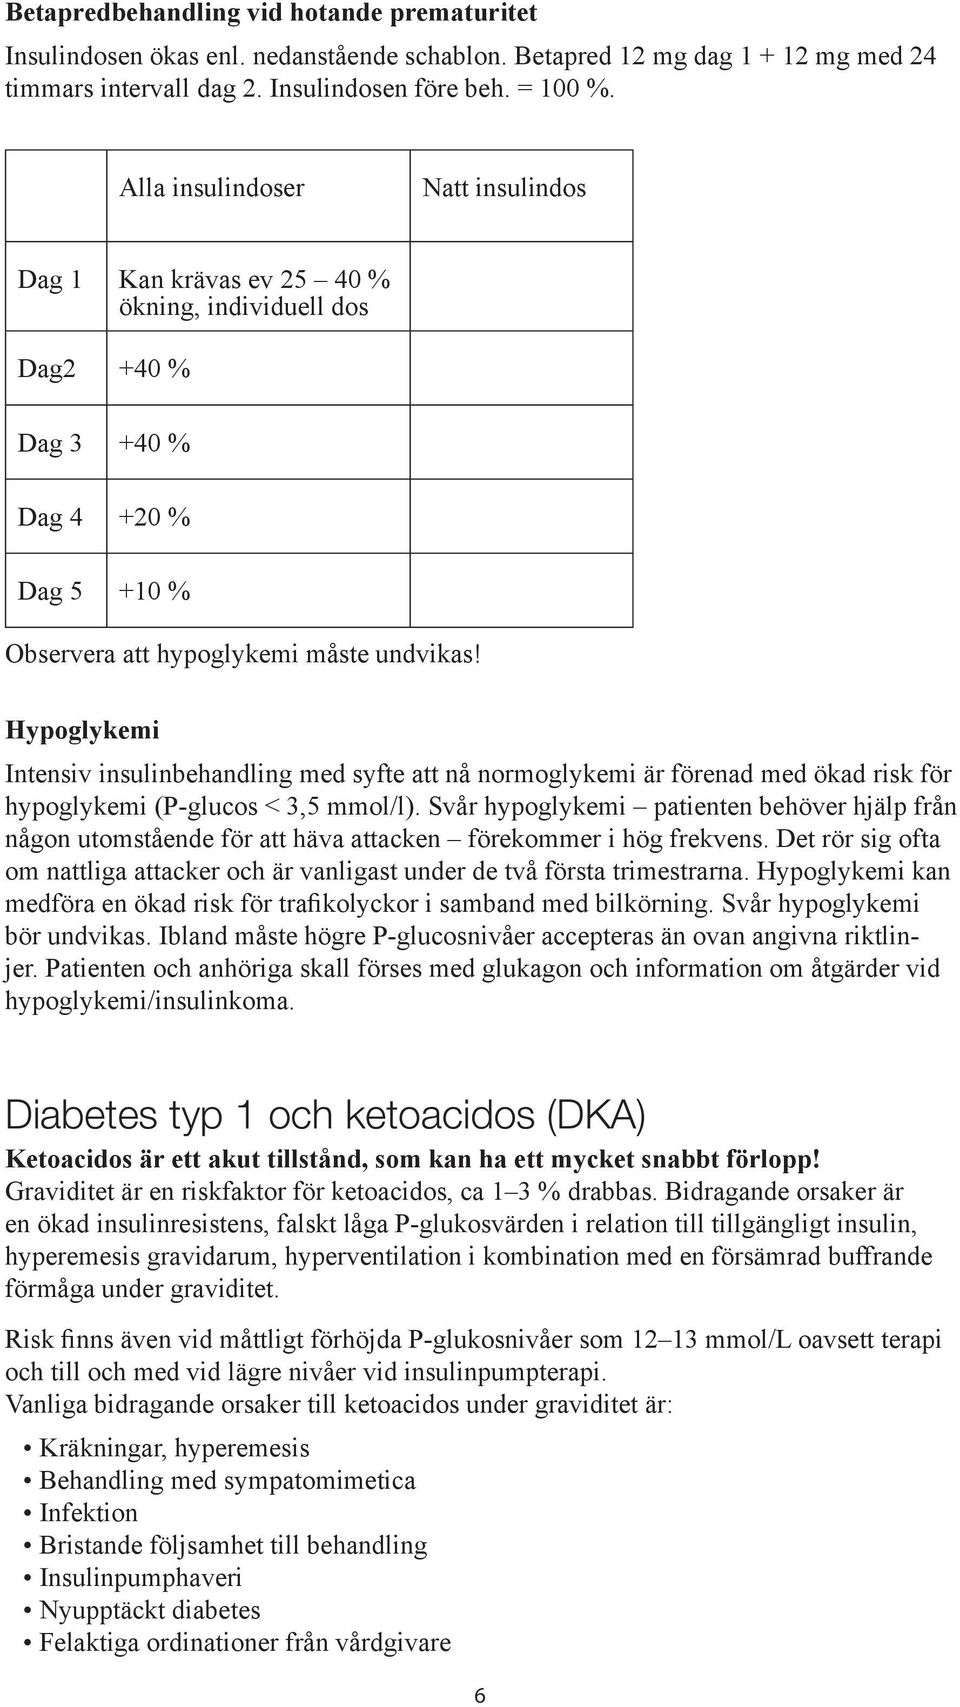 Hypoglykemi Intensiv insulinbehandling med syfte att nå normoglykemi är förenad med ökad risk för hypoglykemi (P-glucos < 3,5 mmol/l).